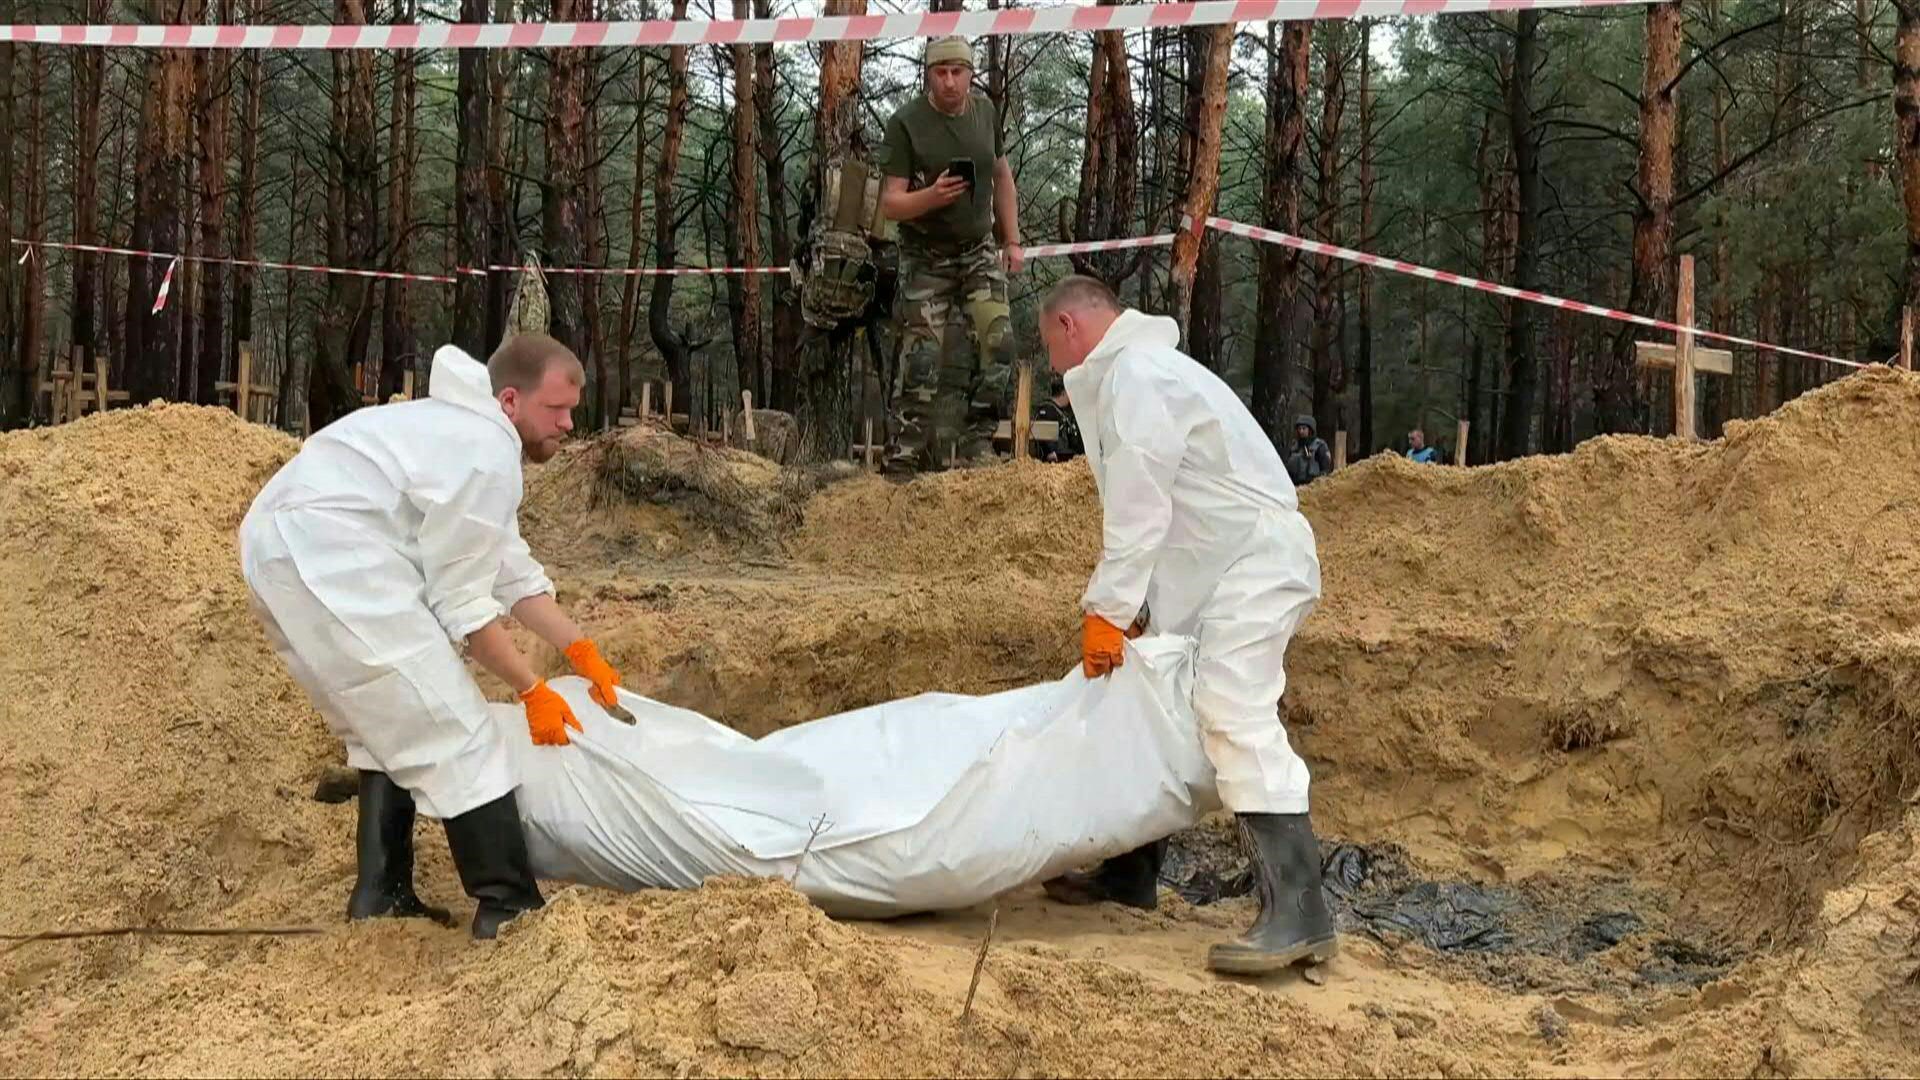 Una nueva masacre rusa en Ucrania. Cientos de cuerpos arrojados en fosas en un bosque en la periferia de Izium, ciudad recientemente reconquistada a las fuerzas rusas en el noreste ucraniano. (Armand Soldin/AFP)